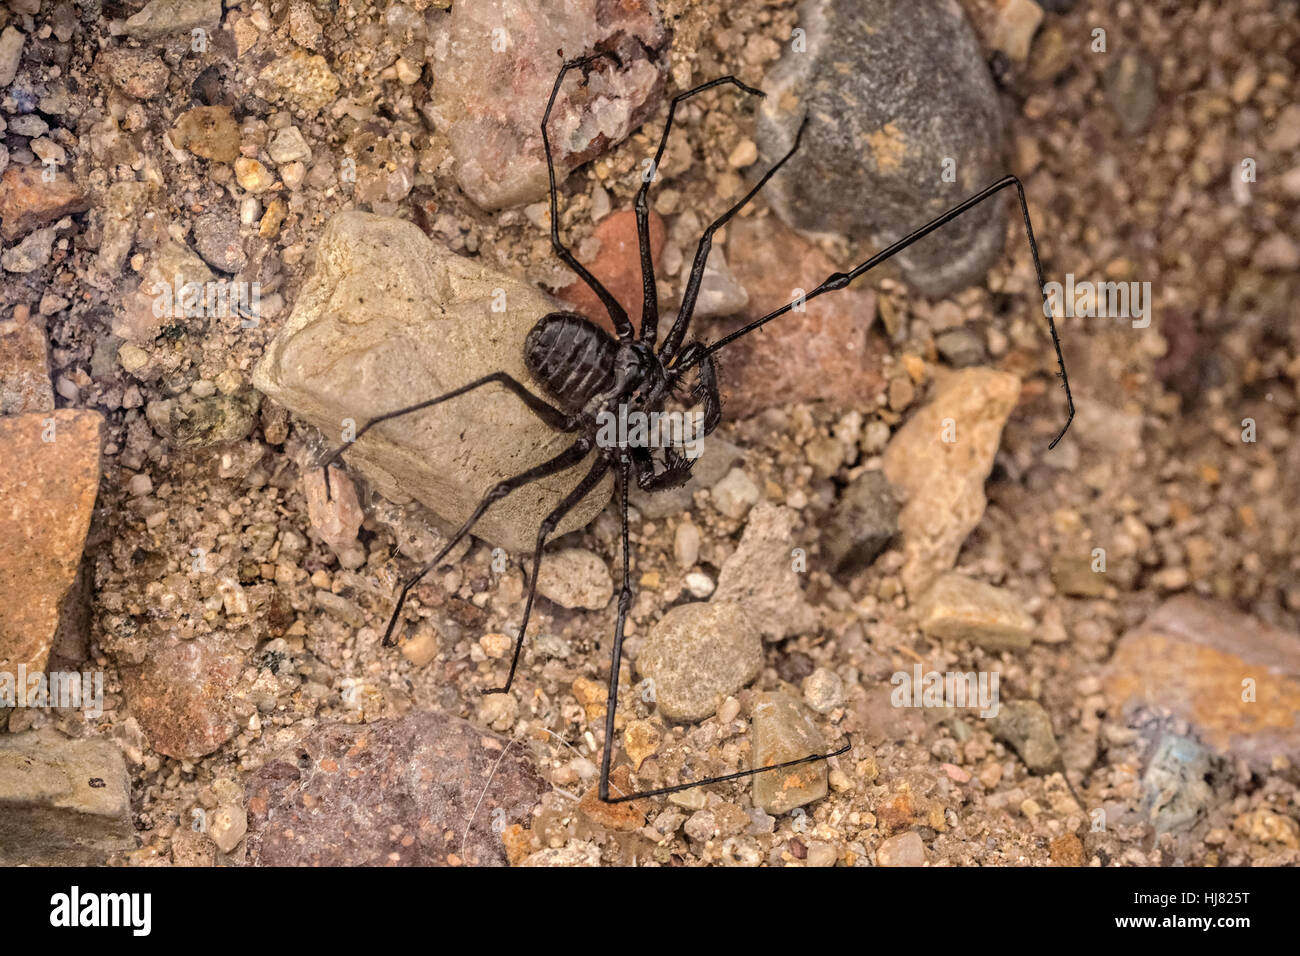 Amblypygi ist eine Bestellung von Arachnid chelicerate Gliederfüßer auch bekannt als Peitsche Spinnen und schwanzlosen Peitsche Scorpions. Amblypygids sind Spinnentiere Stockfoto